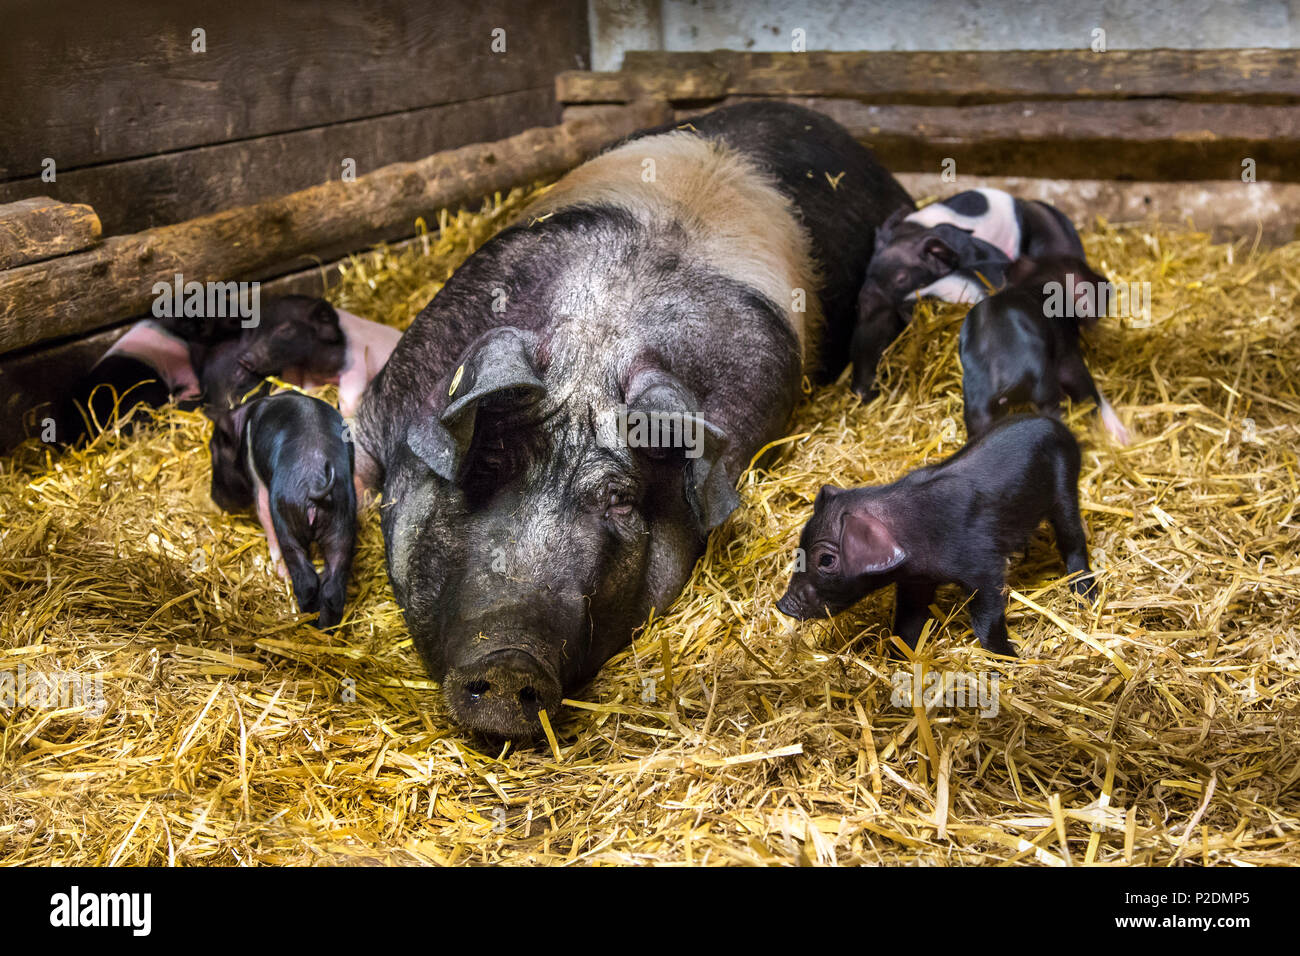 Historic pig breed, Angeln Saddleback, Ekenis, Schlei Fjord, Baltic Coast, Schleswig-Holstein, Germany Stock Photo